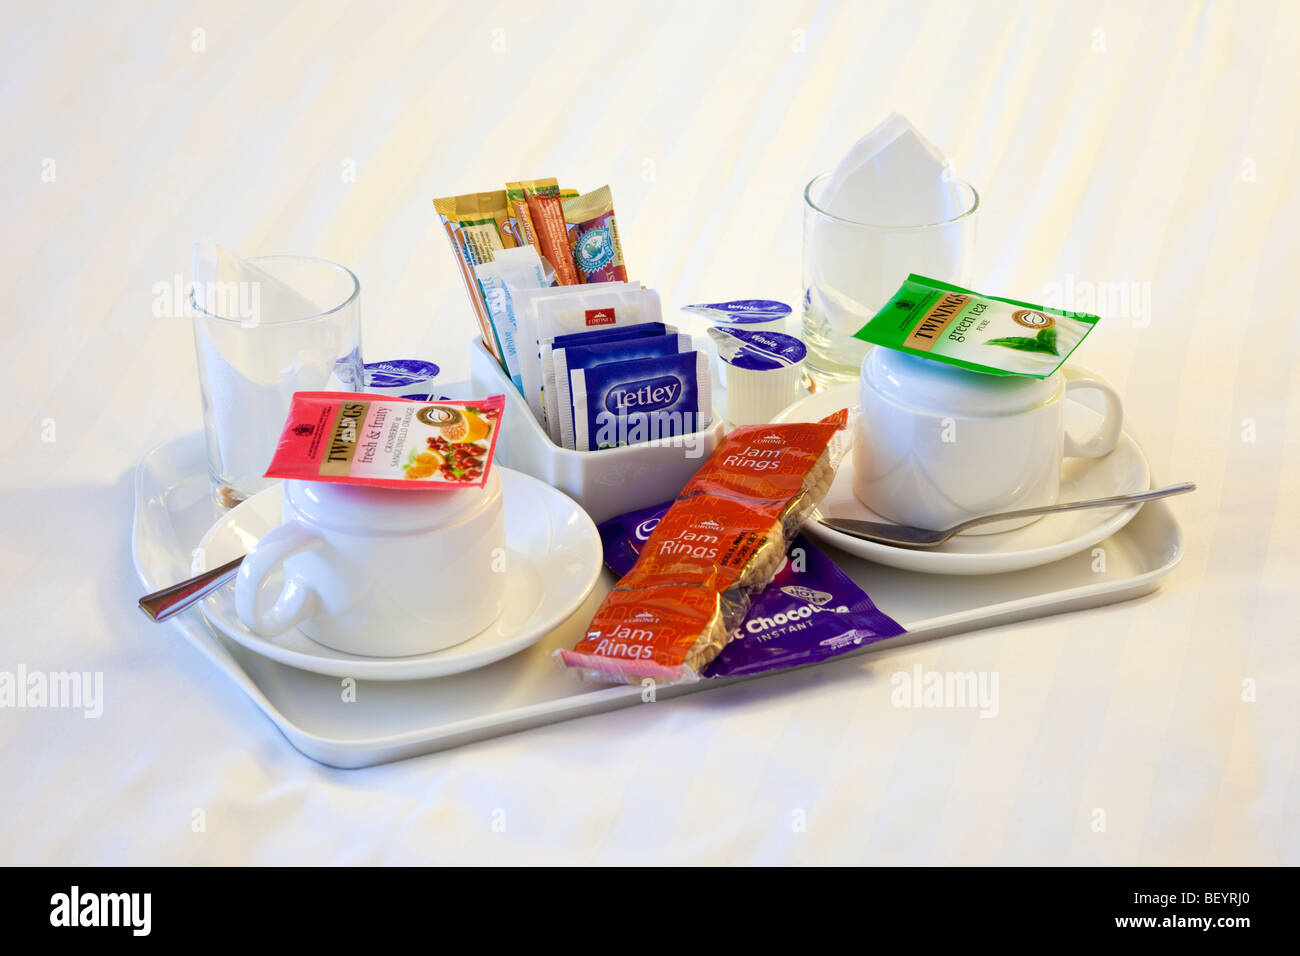 Bandeja de té y café en la habitación de un hotel bed Foto de stock